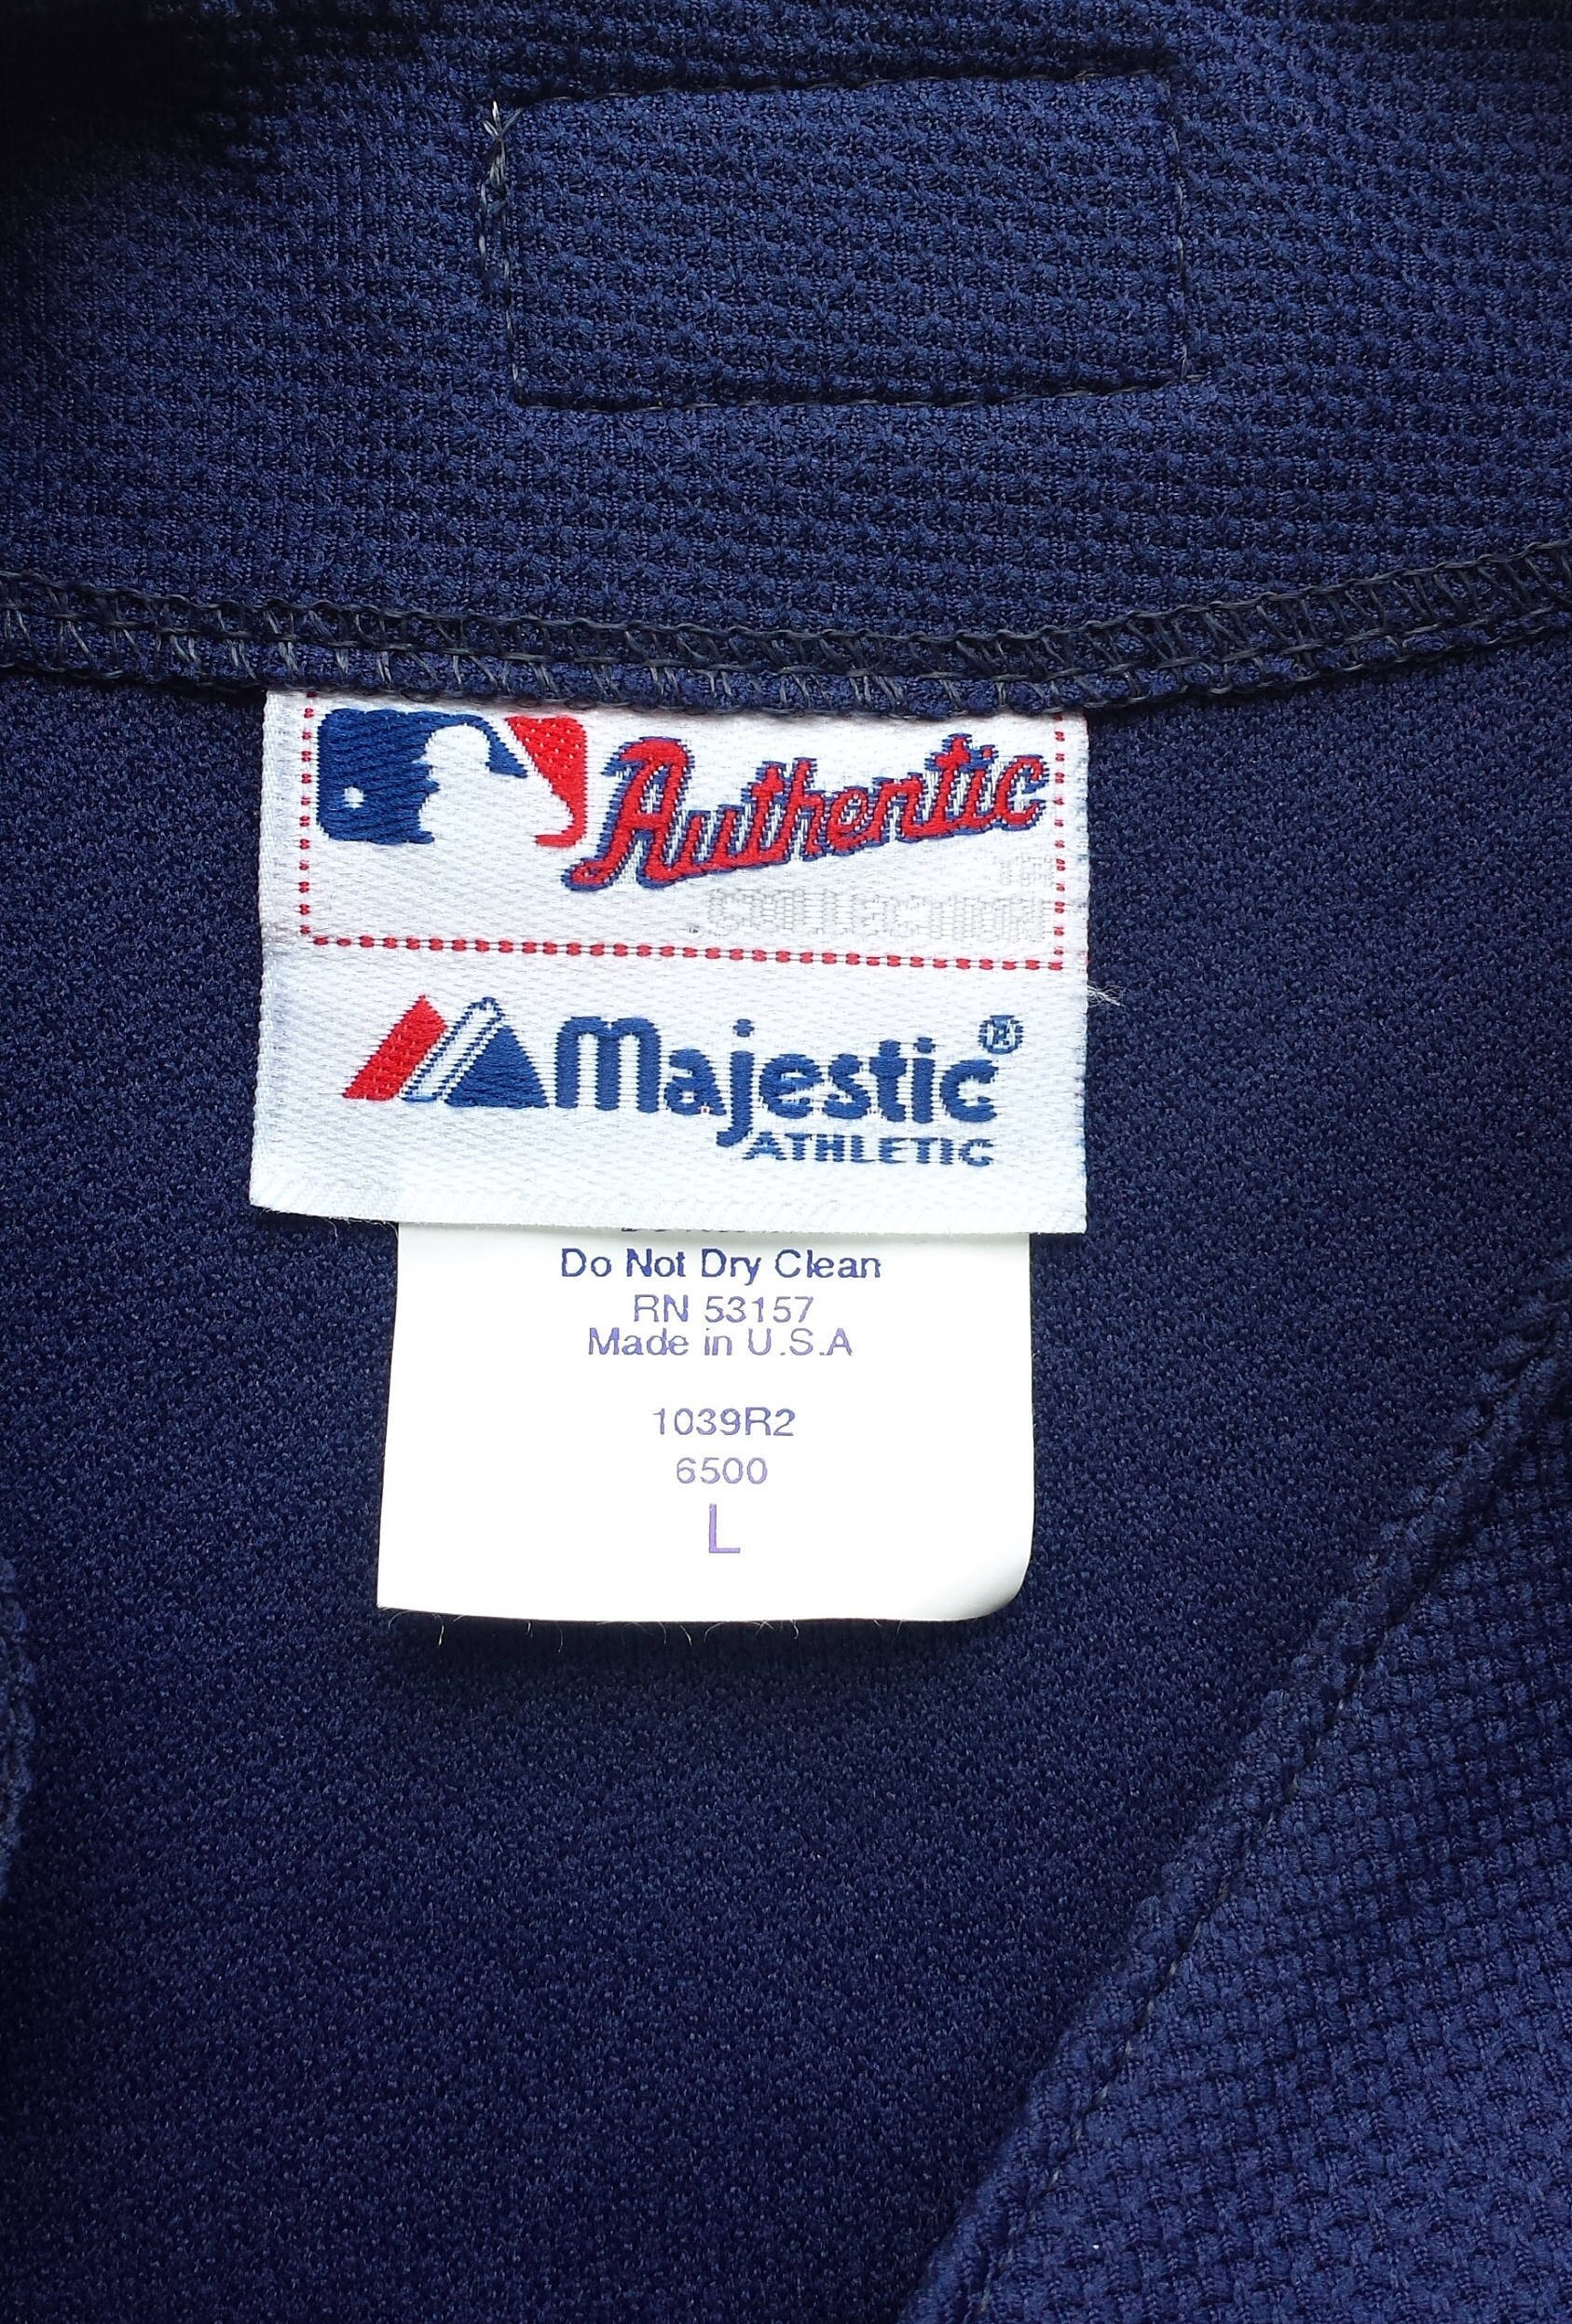 Vintage Early 2000's Atlanta Braves MLB Jersey / Majestic 